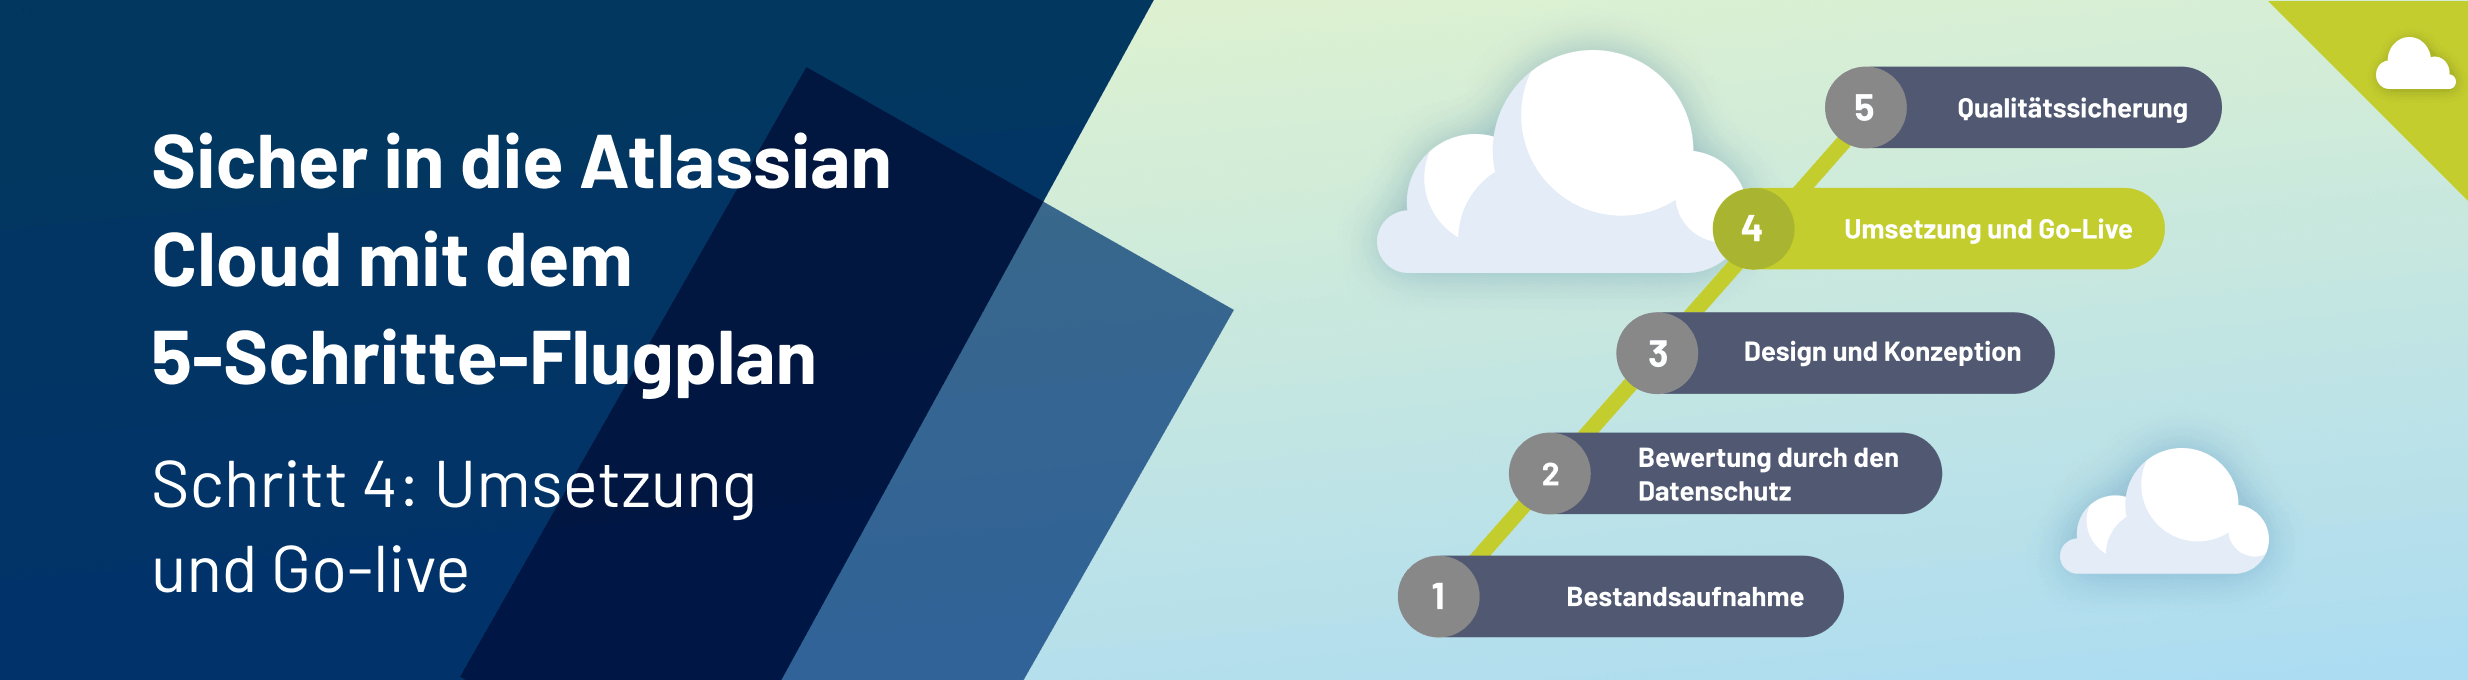 Header 5-Schritte-Flugplan in die Atlassian Cloud #4: Umsetzung und Go-iive